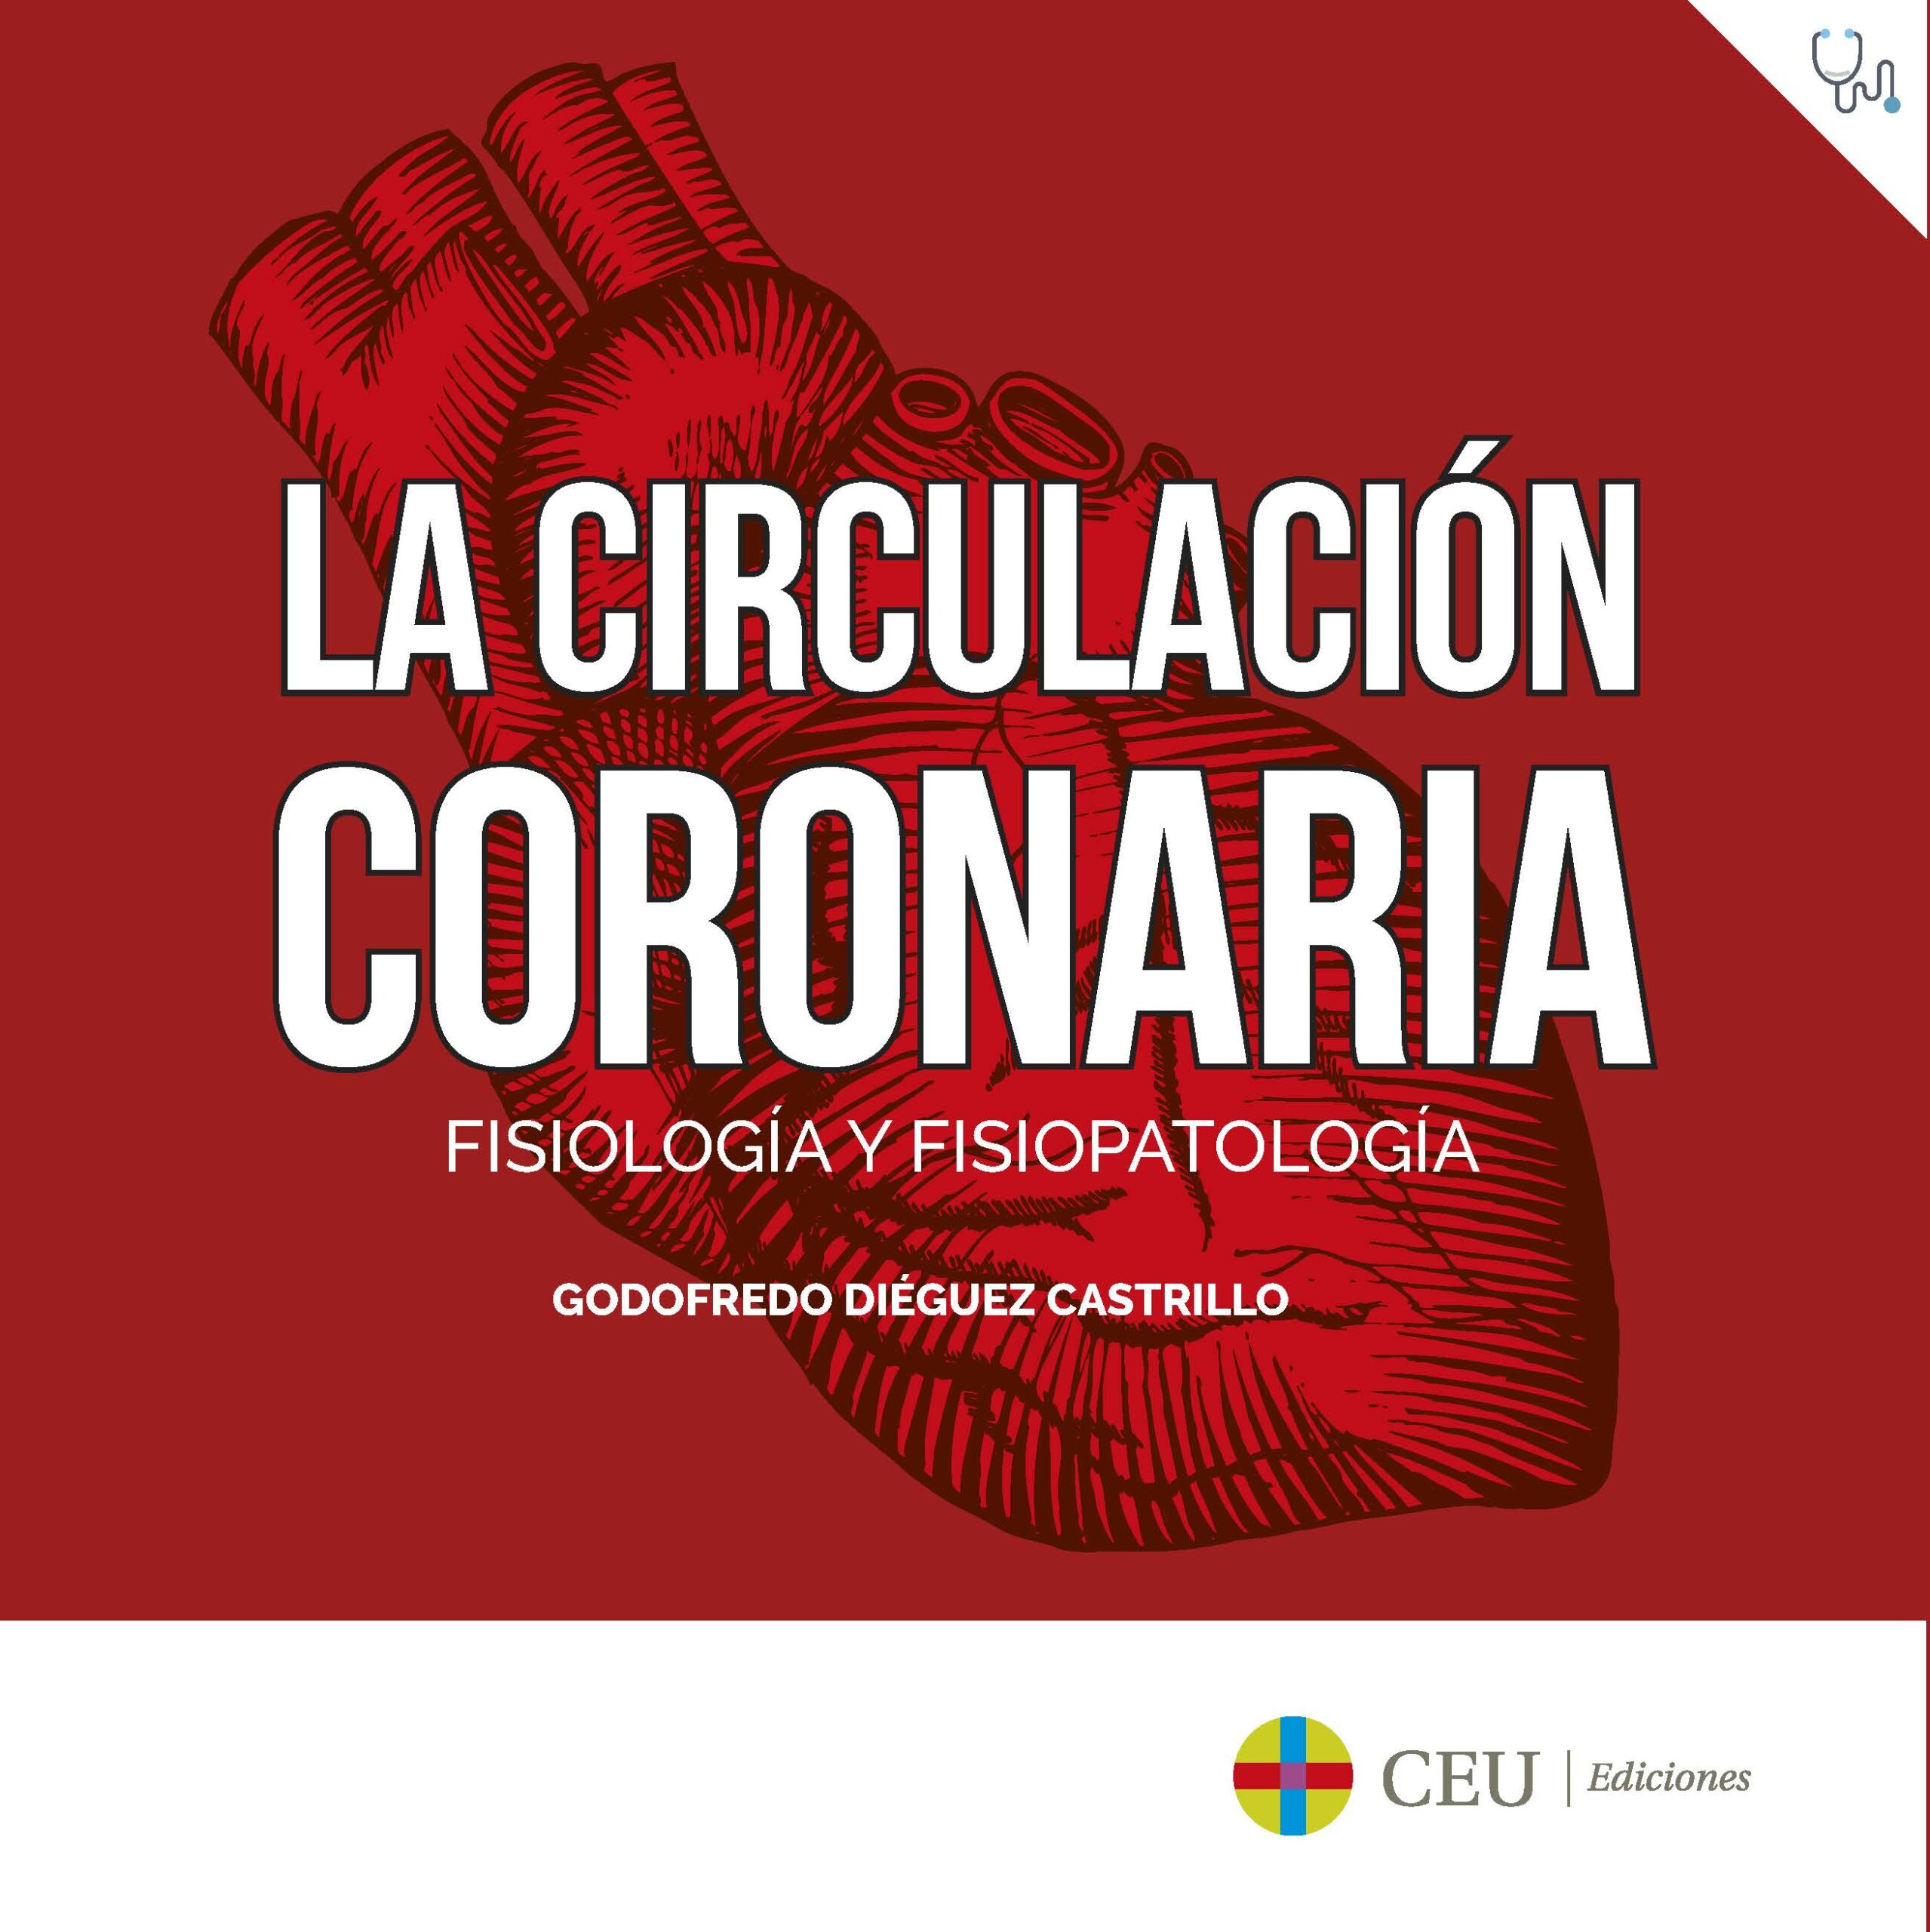 Circulación coronaria fisiología fisiopatología